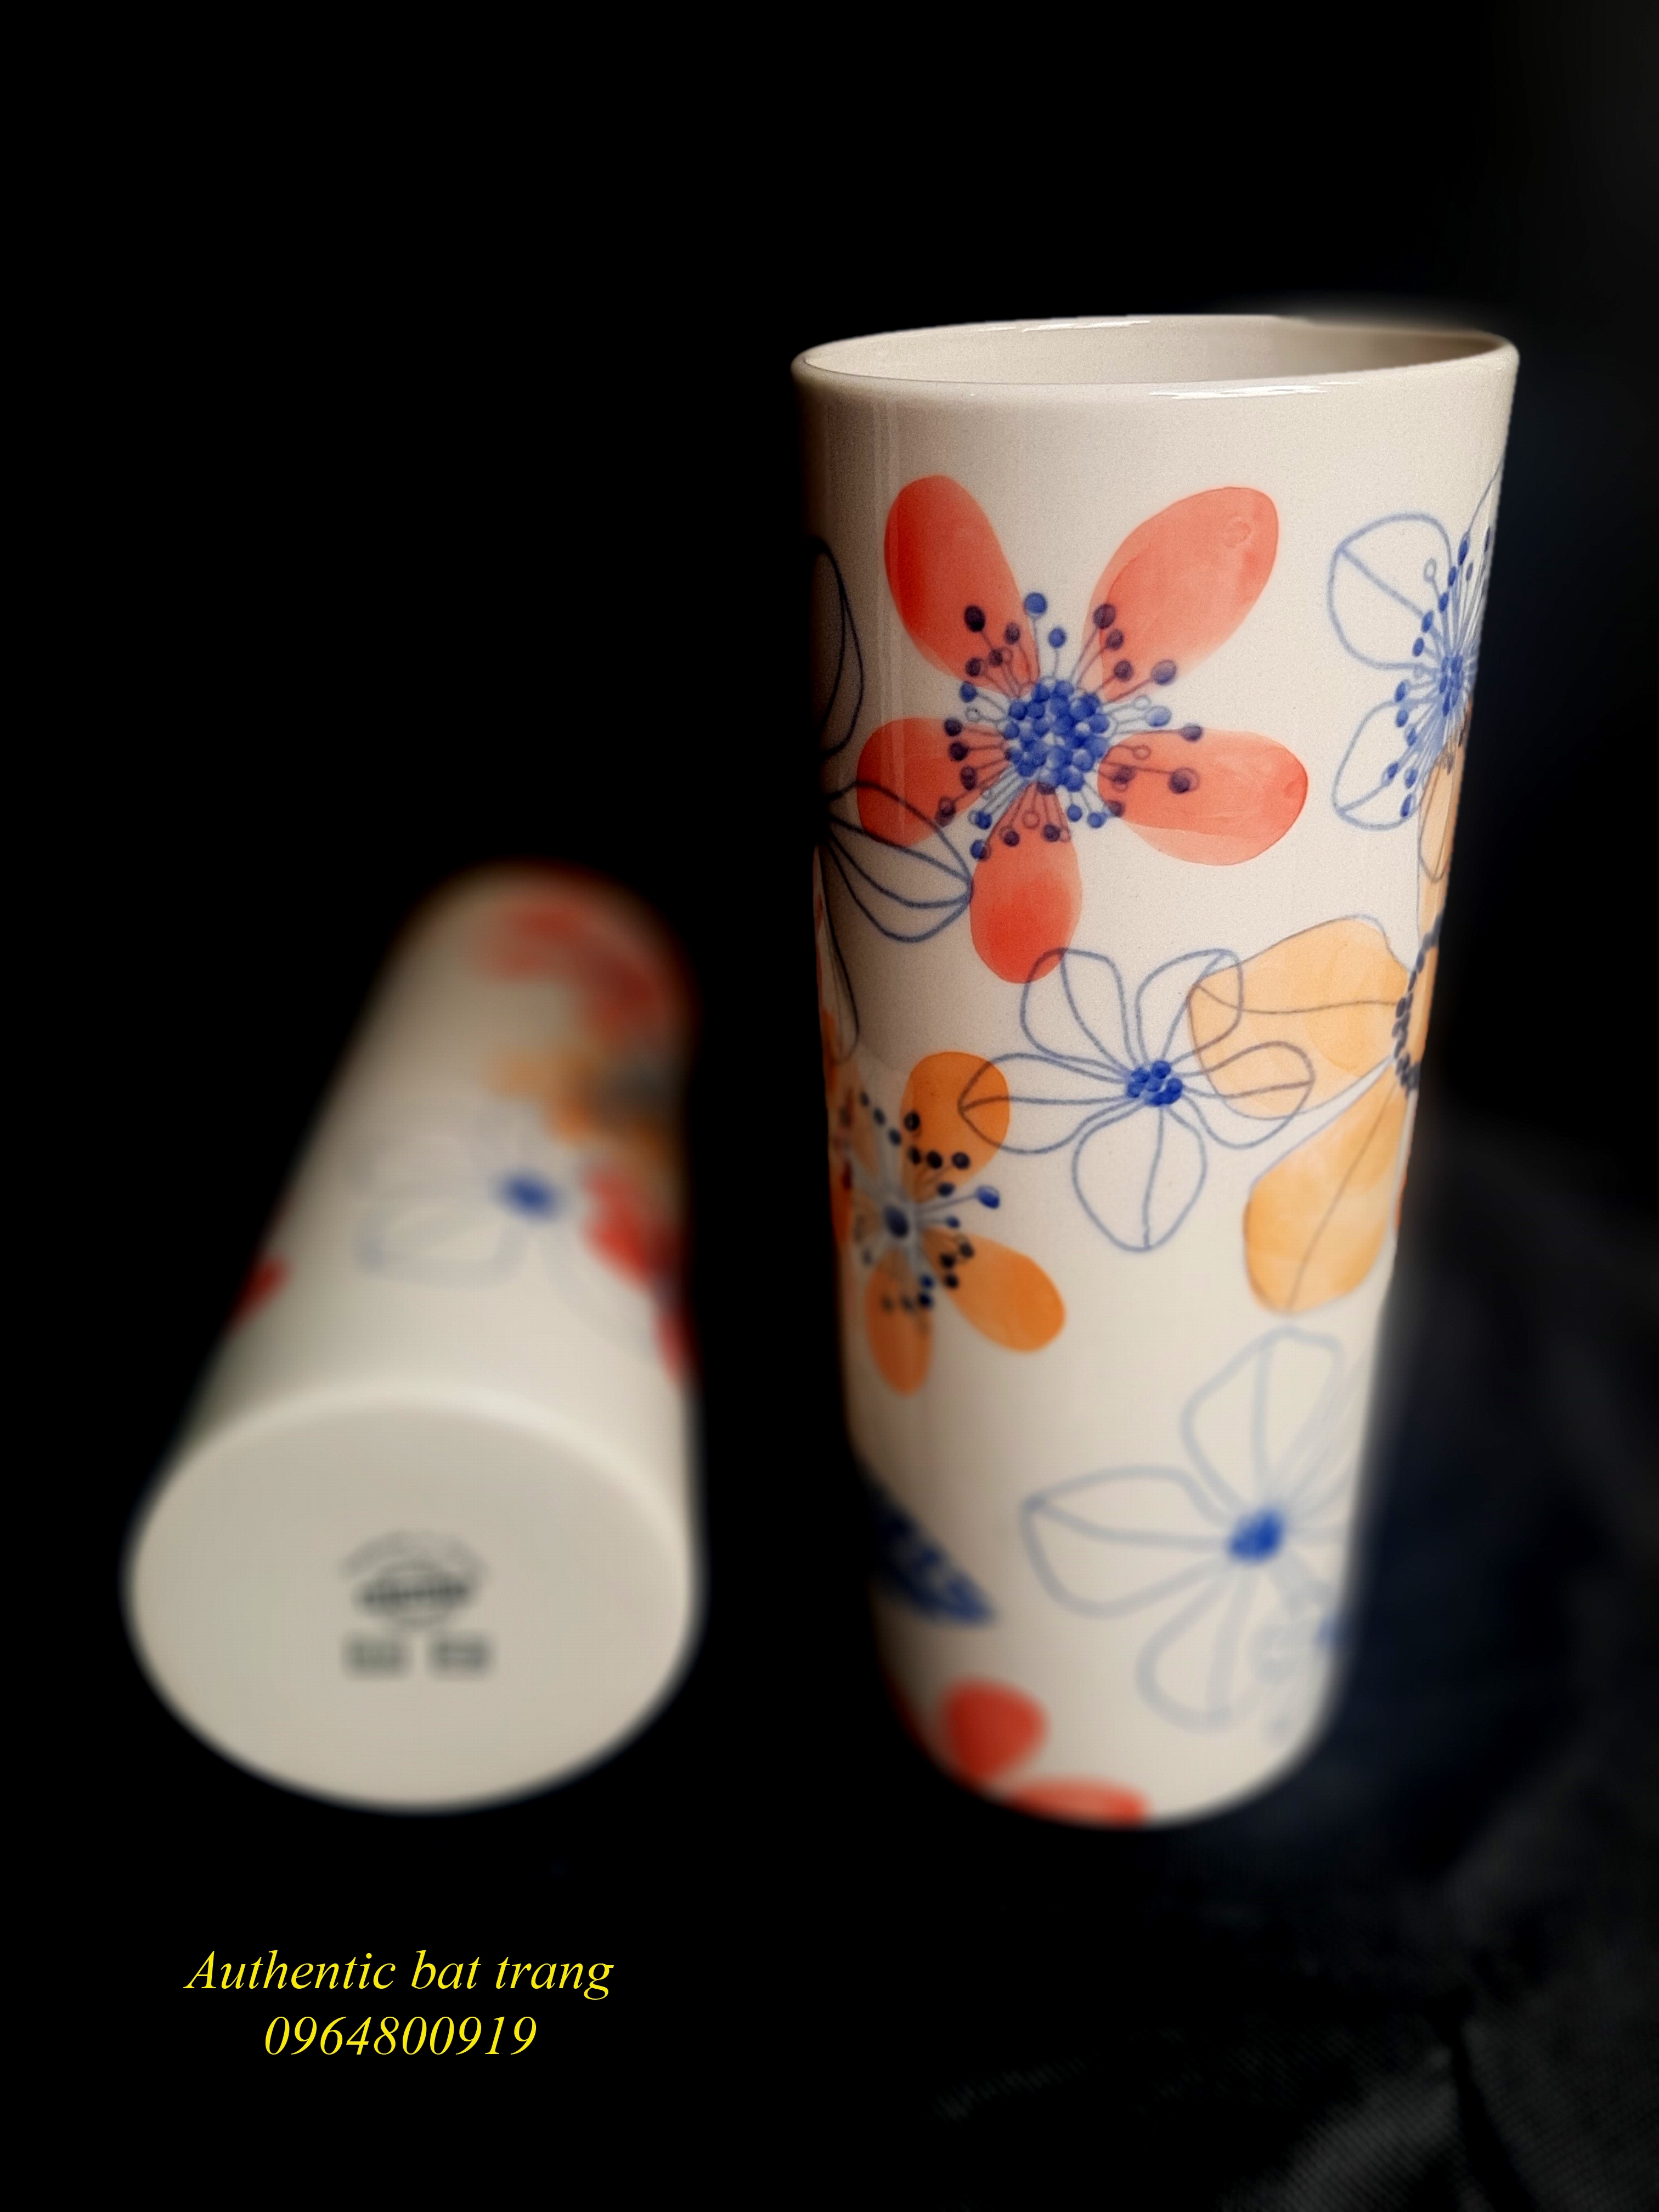 Hand painted ceramics vases/ Bình gốm trụ trụ cắm hoa sản phẩm vẽ tay thủ công sản xuất tại xưởng gốm sứ Authentic bat trang